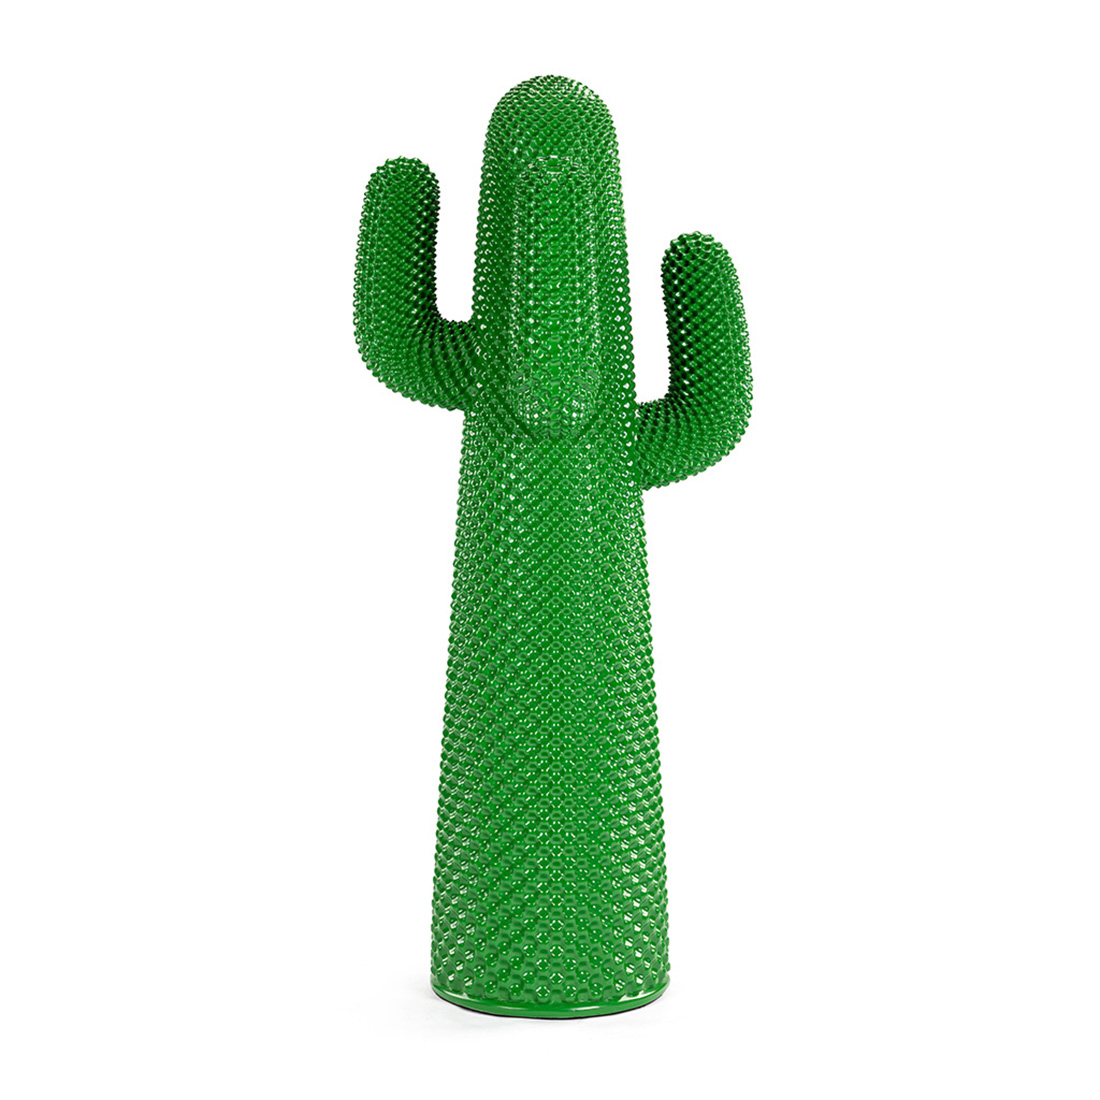 Drocco & Mello Sculptural Cactus Coat Rack-Green